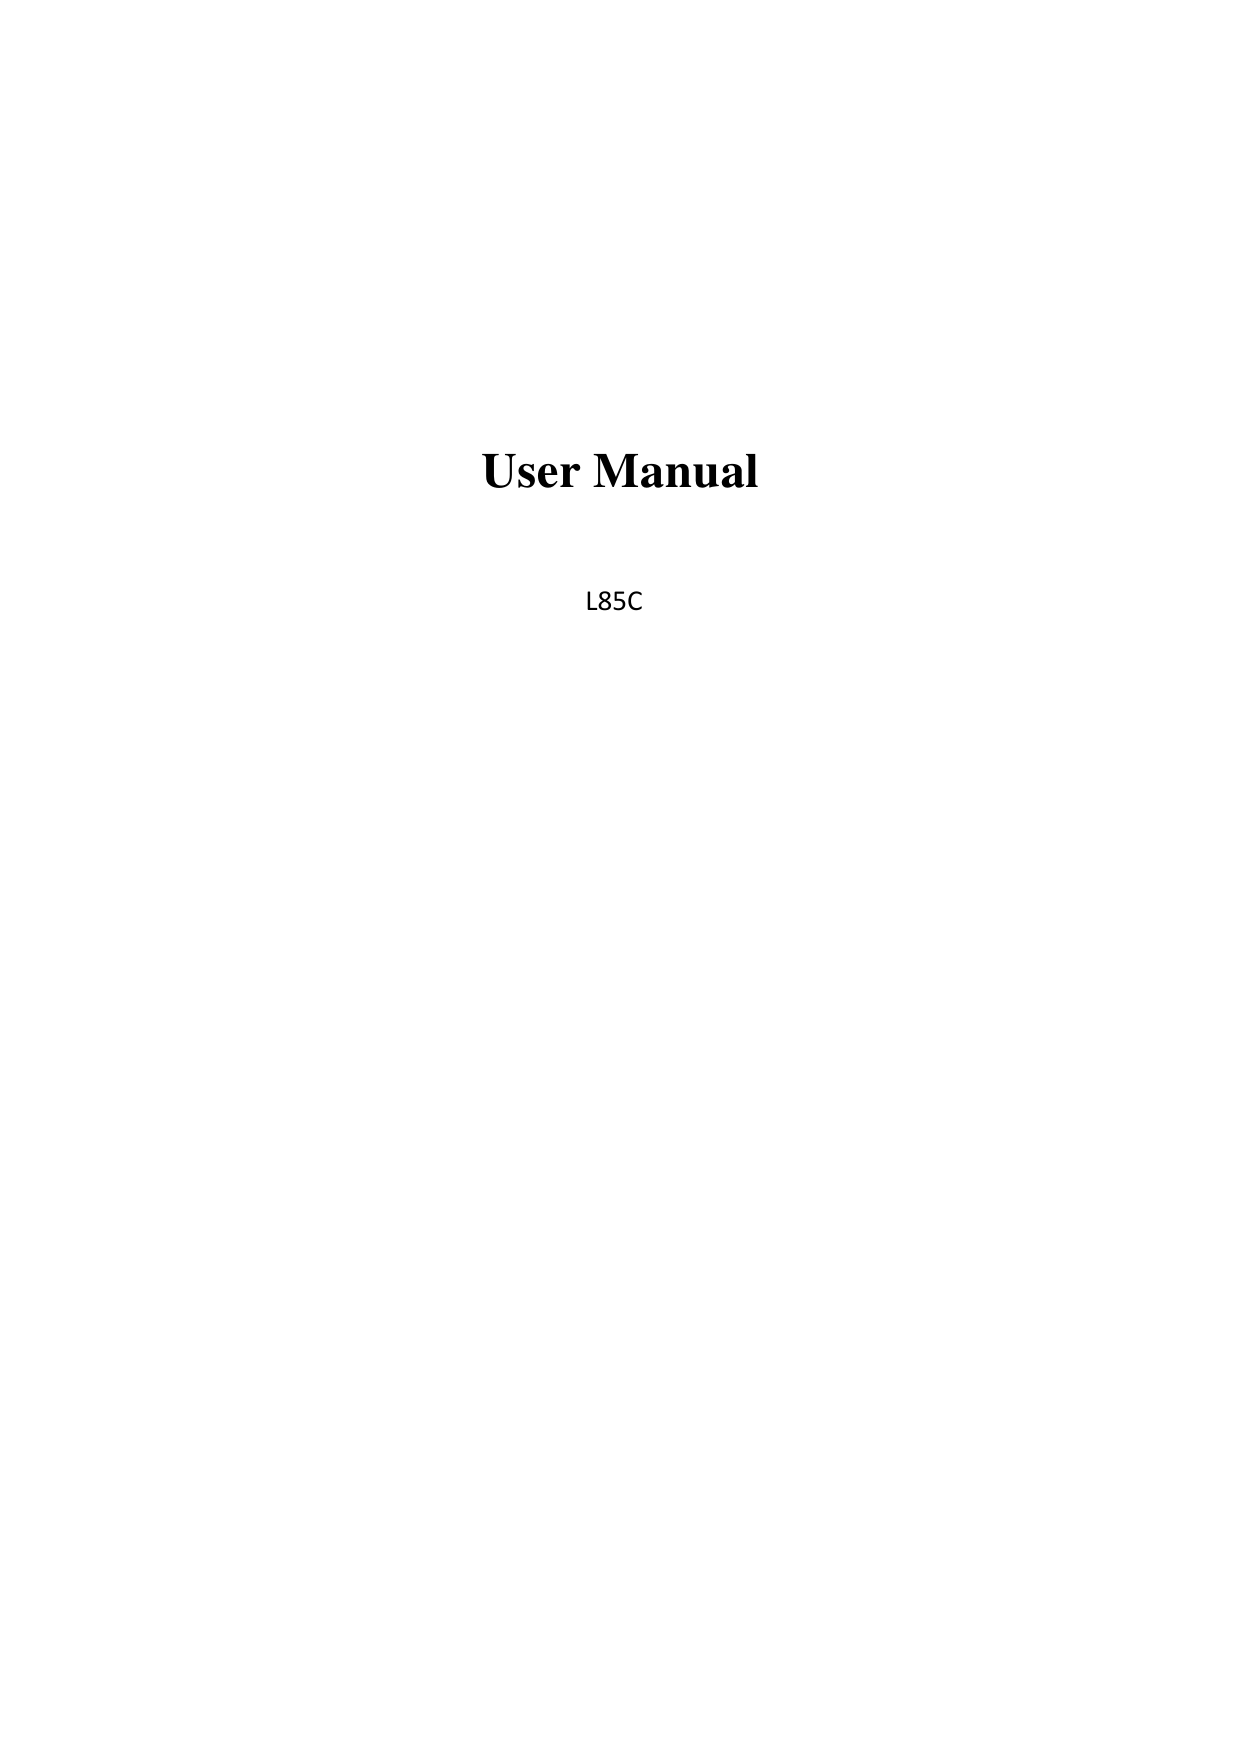     User Manual  L85C                     